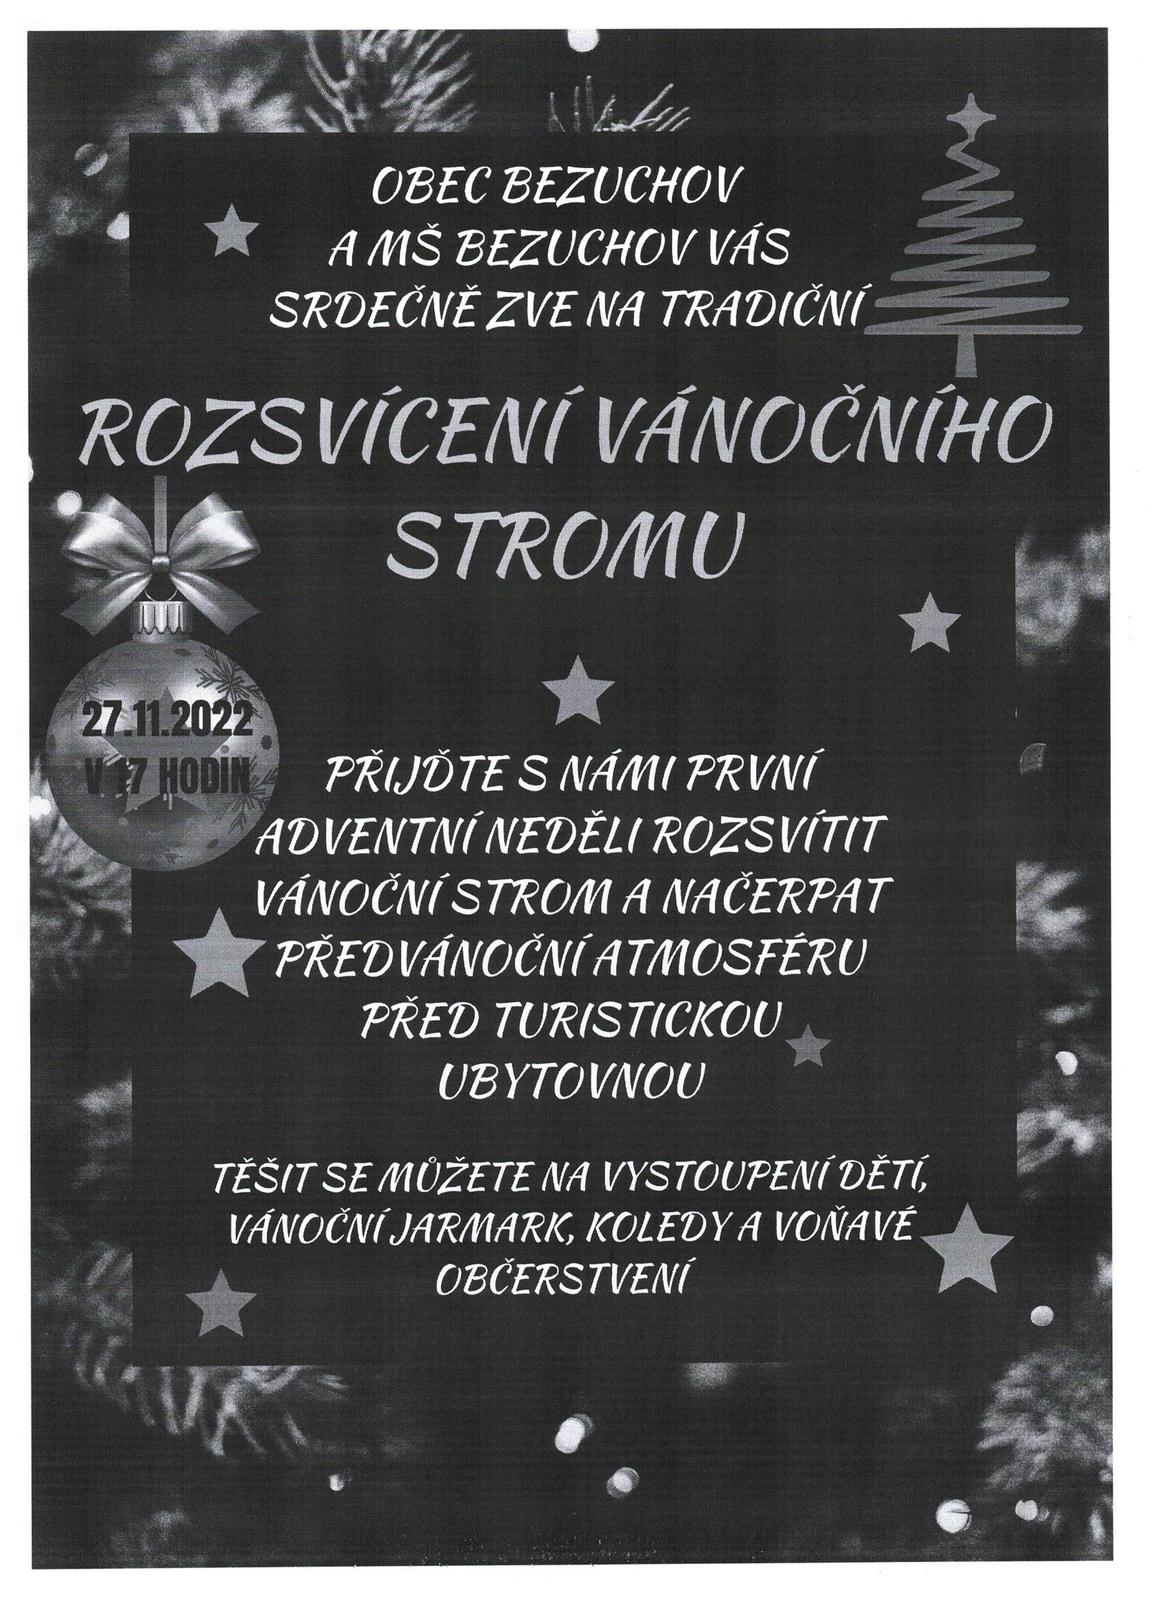 Pozvánka rozsvěcení Vánočního stromu obec Bezuchov.jpeg